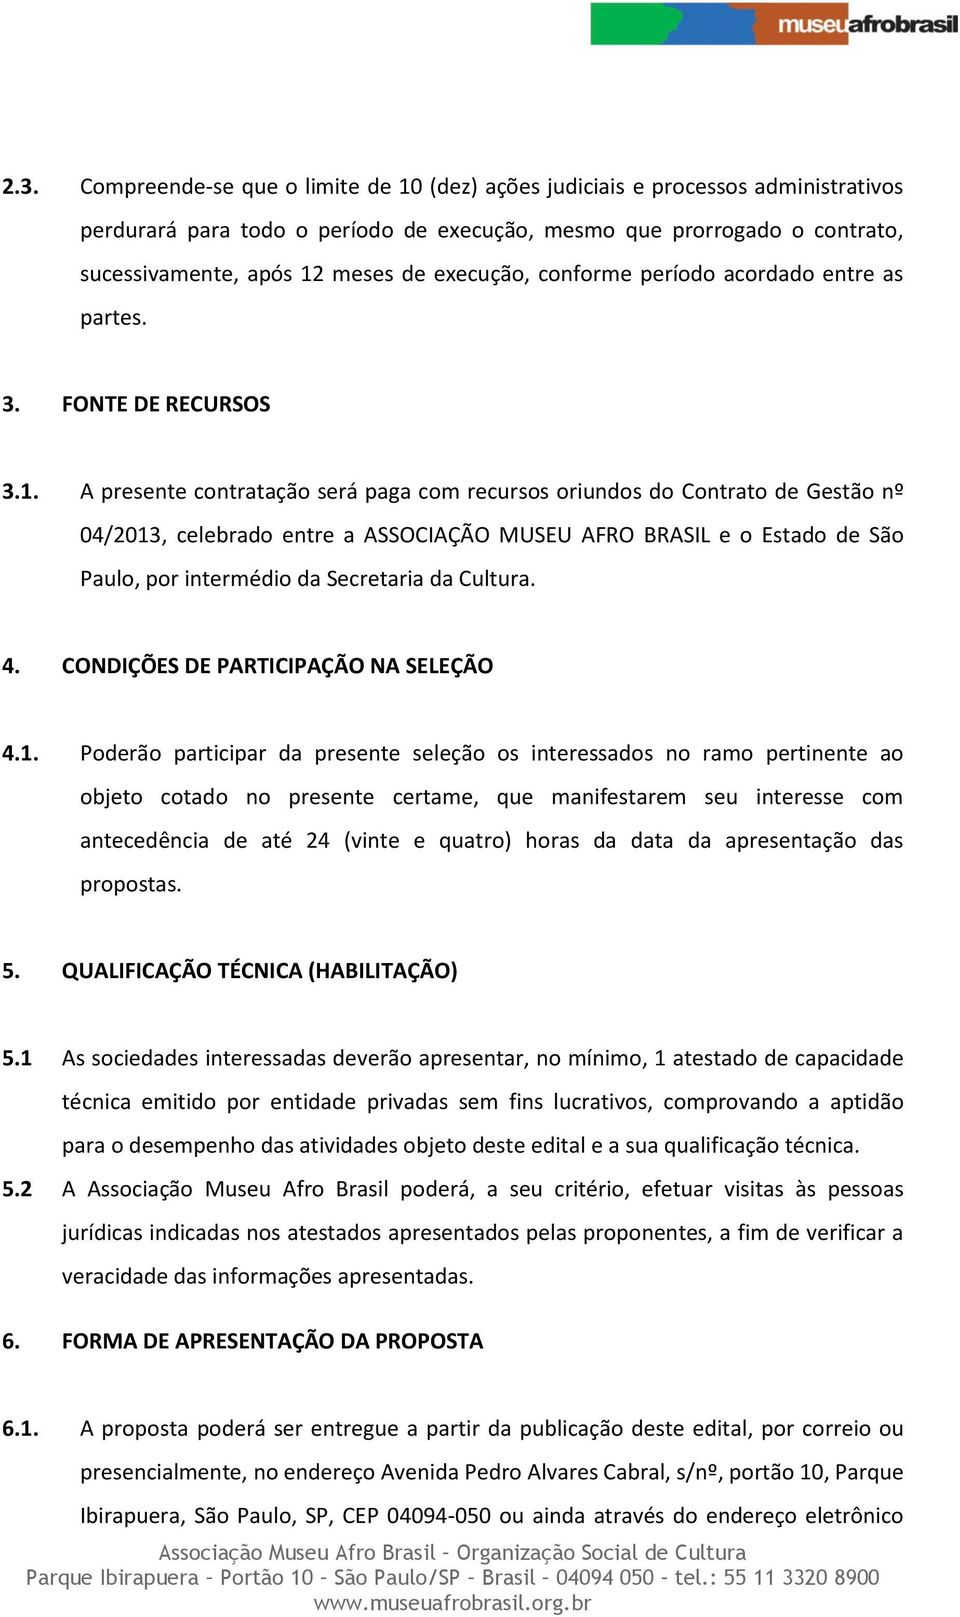 A presente contratação será paga com recursos oriundos do Contrato de Gestão nº 04/2013, celebrado entre a ASSOCIAÇÃO MUSEU AFRO BRASIL e o Estado de São Paulo, por intermédio da Secretaria da